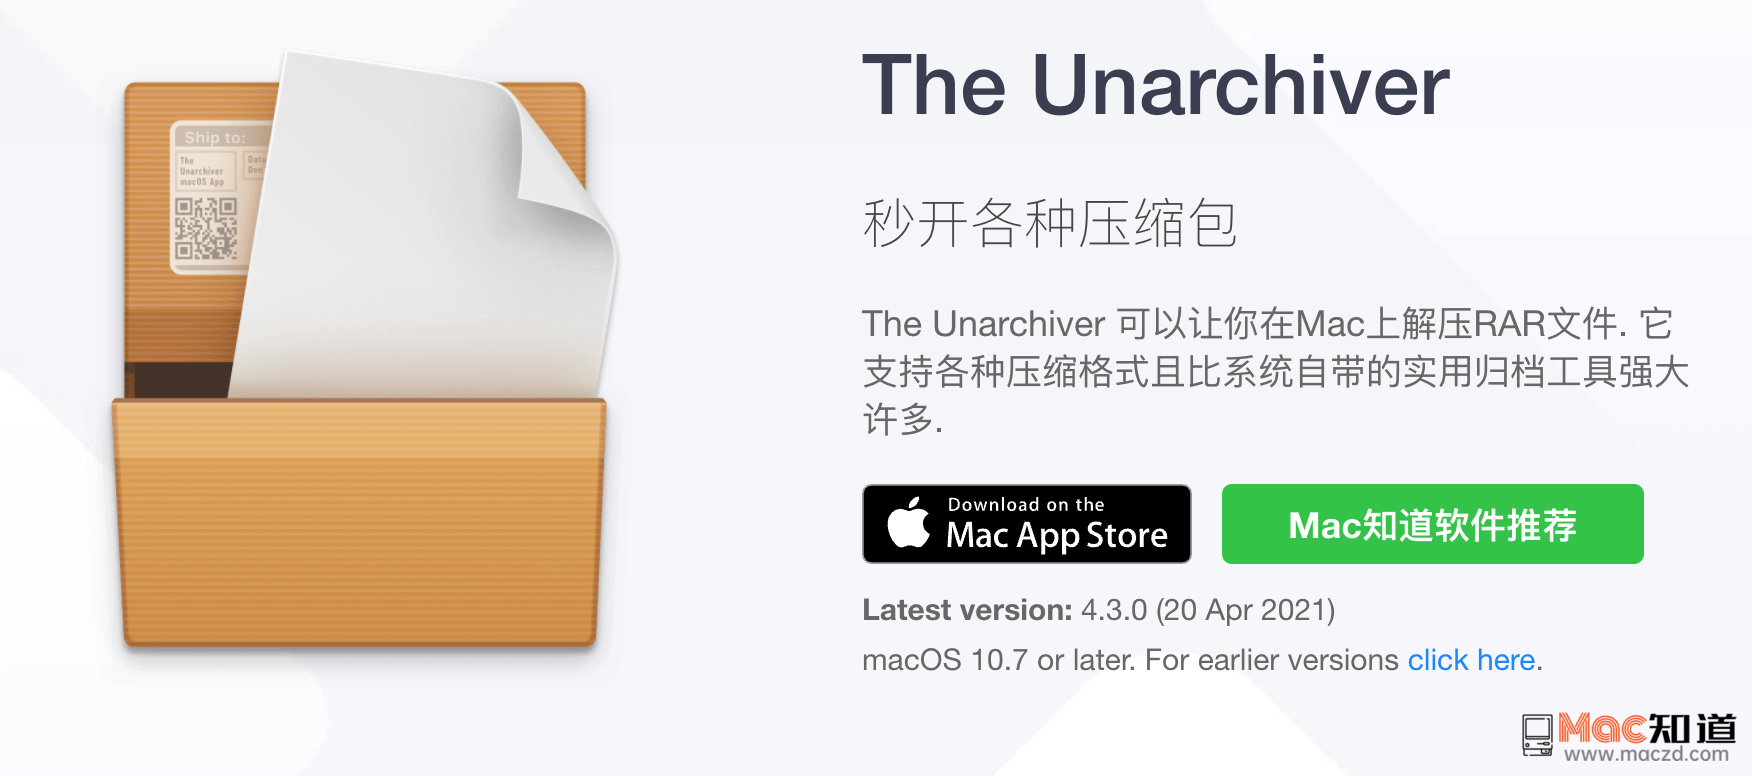 解压软件 The Unarchiver